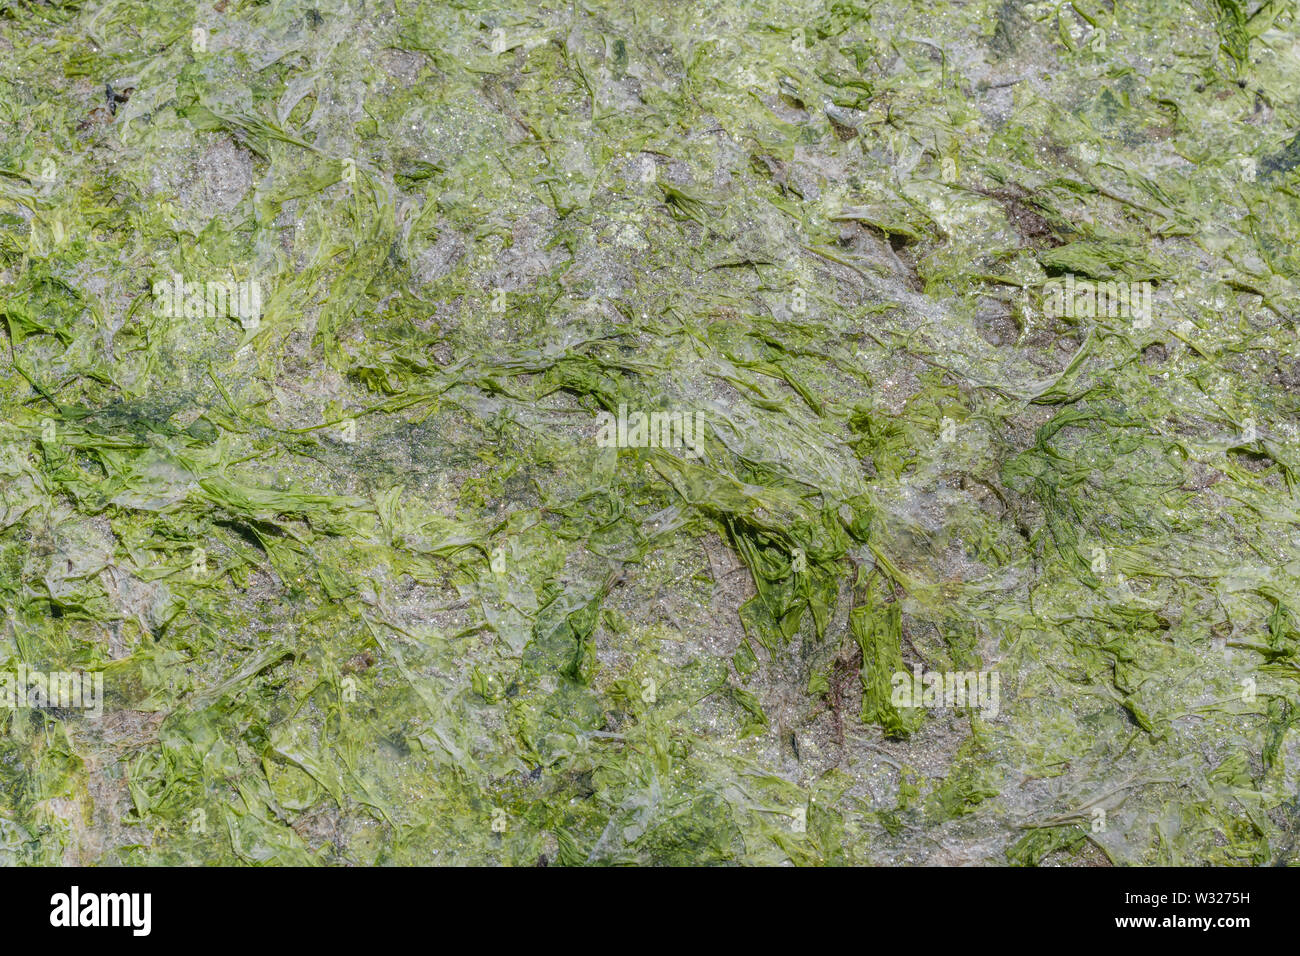 Litze grün Algen Sea Lettuce/Ulva lactuca gewaschen an Land, am Strand und an der Drift Linie abgelegt. Angeschwemmte Metapher, gestrandete Konzept. Stockfoto